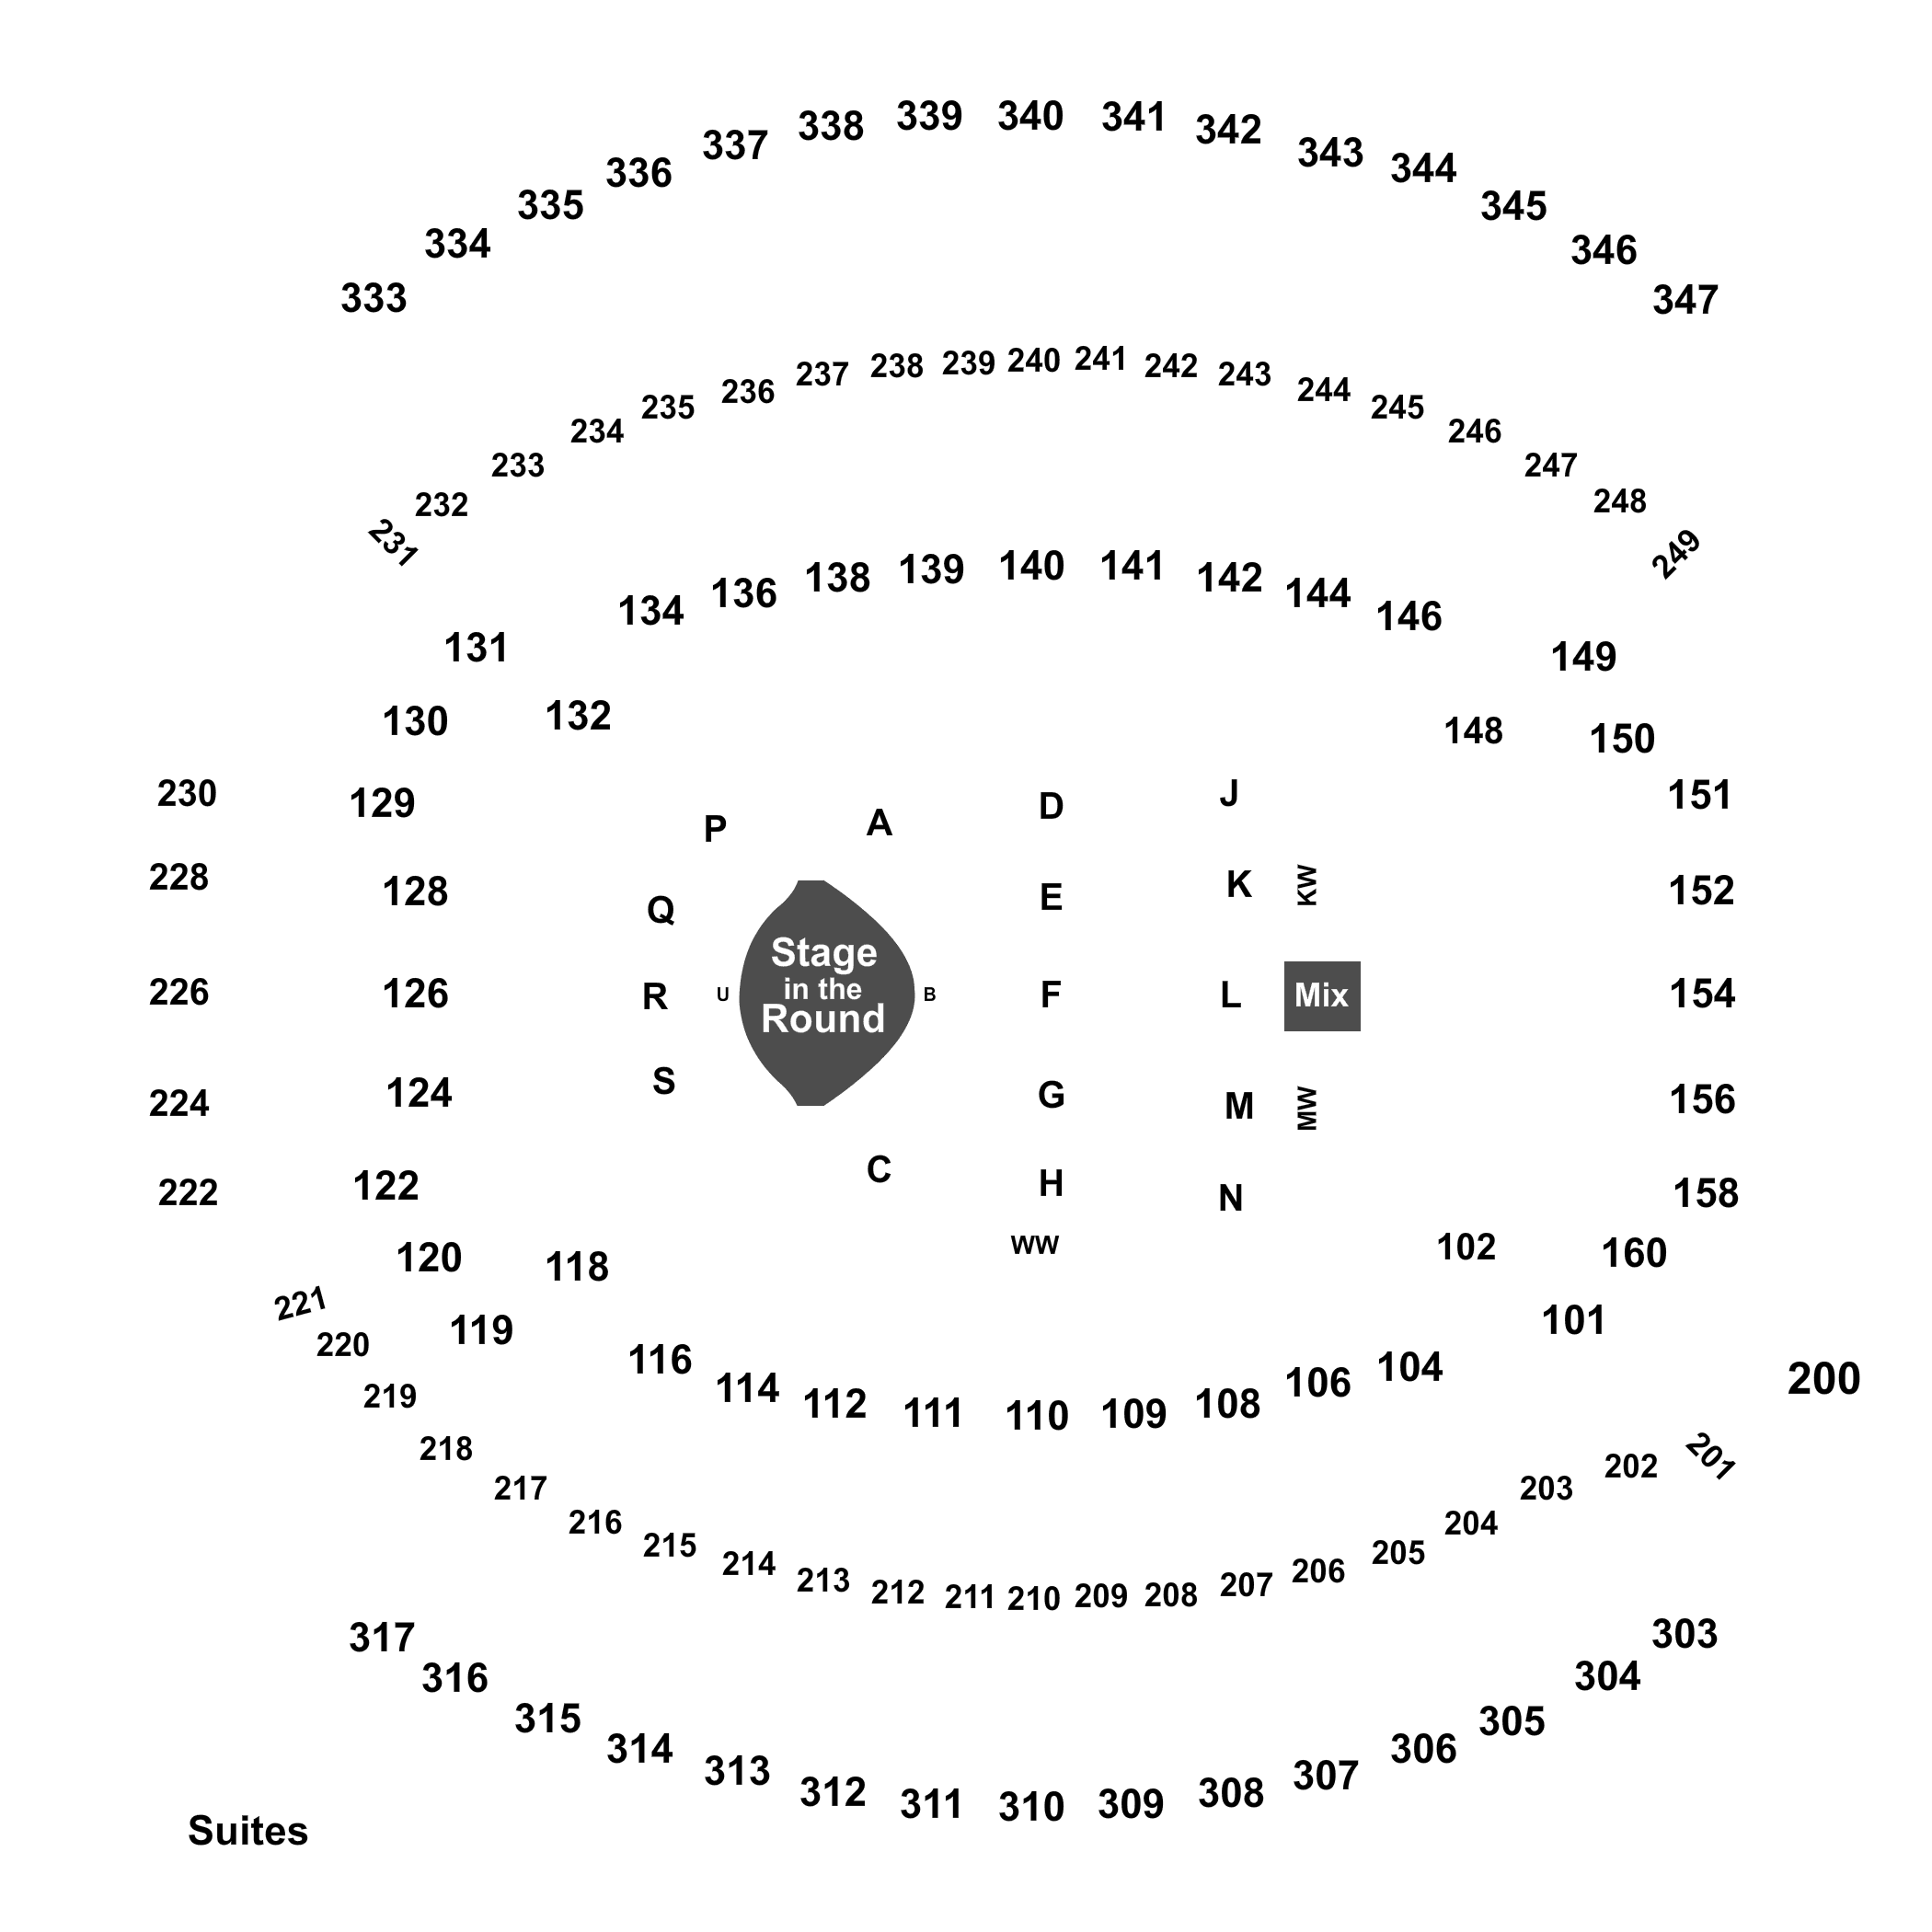 Paul Brown Stadium Seating Chart Luke Bryan